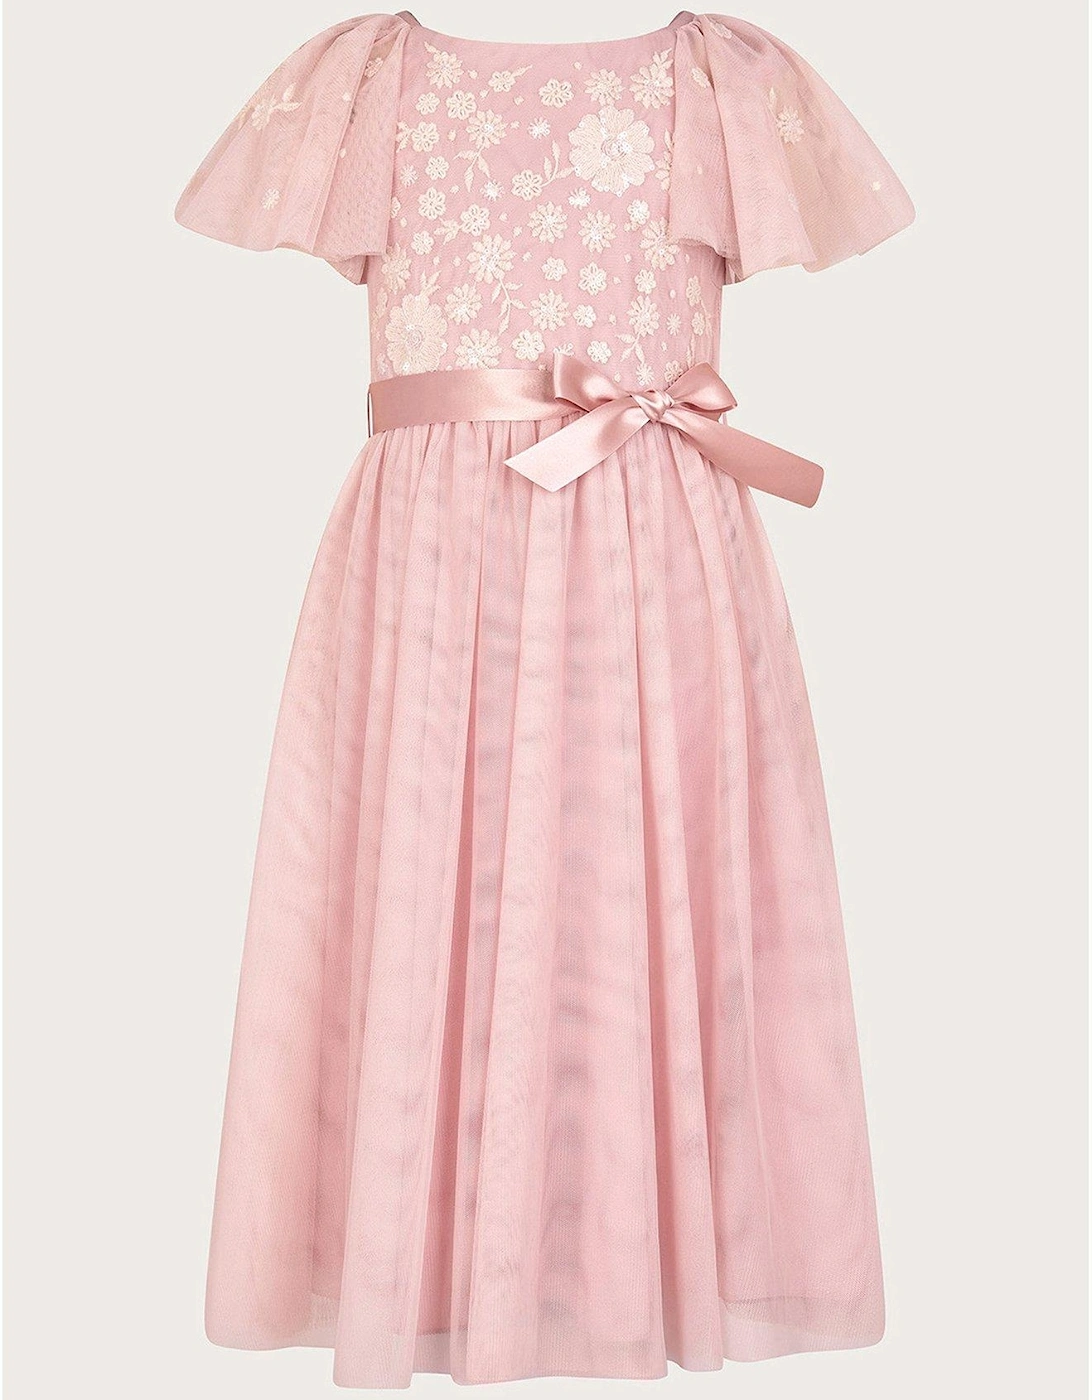 Girls Giselle Embellished Floral Dress - Dusky Pink, 2 of 1